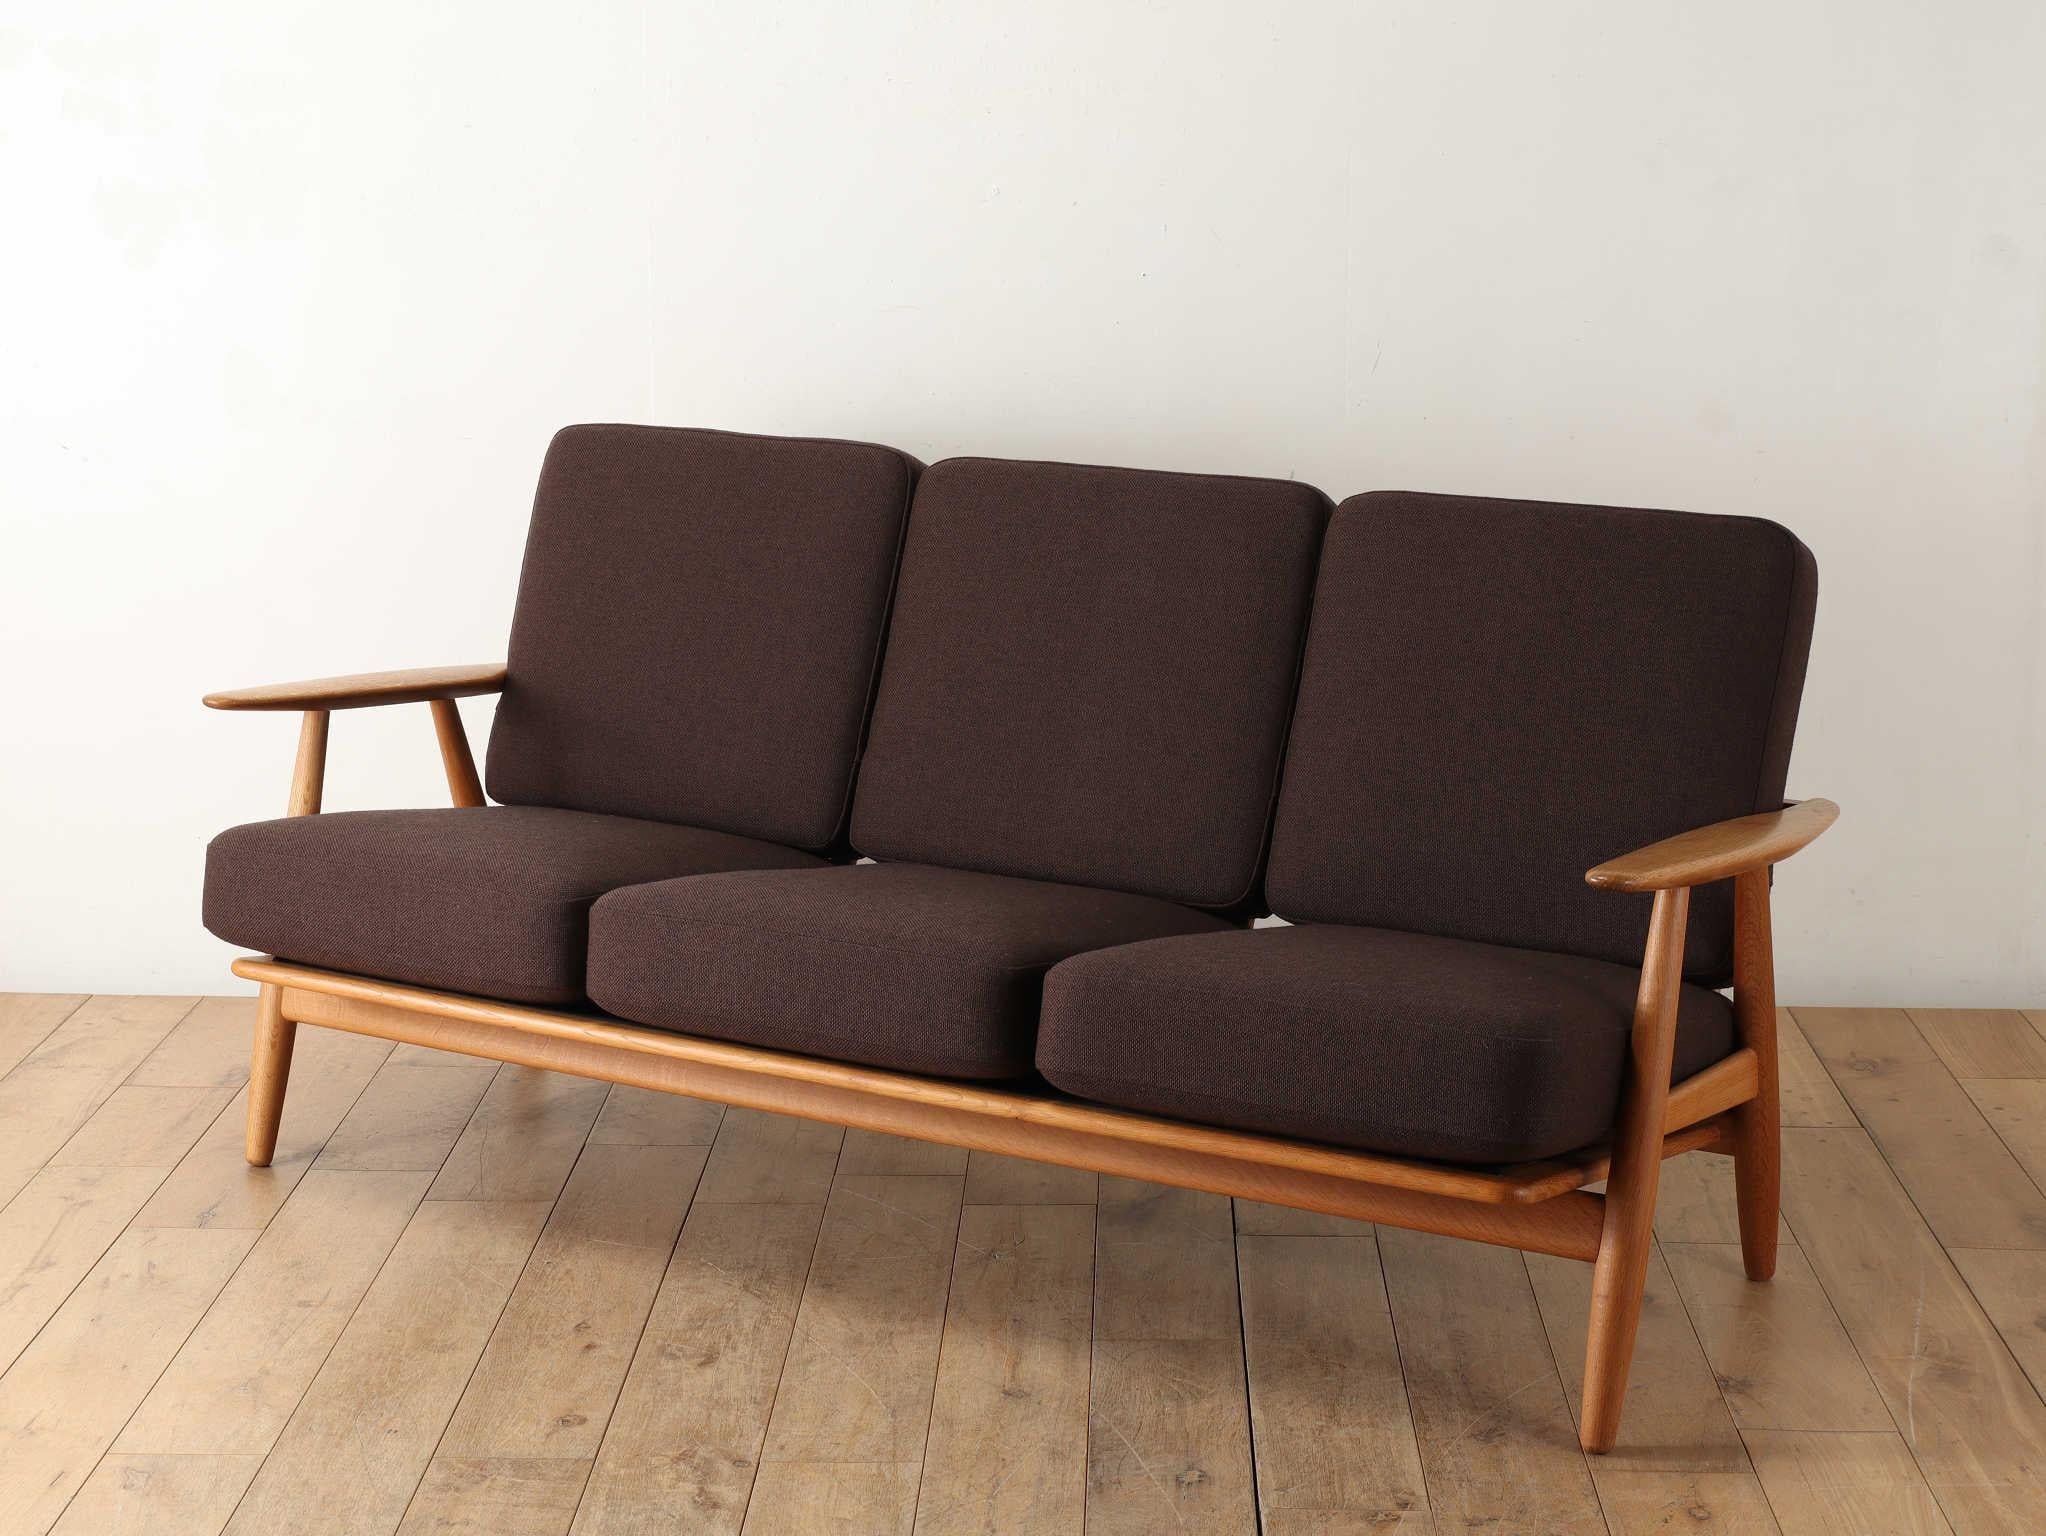 Hans J. Wegner. Er soll zu Lebzeiten mehr als 500 Stühle entworfen haben und war einer der einflussreichsten Meister in der Geschichte des dänischen Möbeldesigns. Die GETAMA-Serie des Matratzenherstellers GETAMA ist eines seiner beliebtesten und